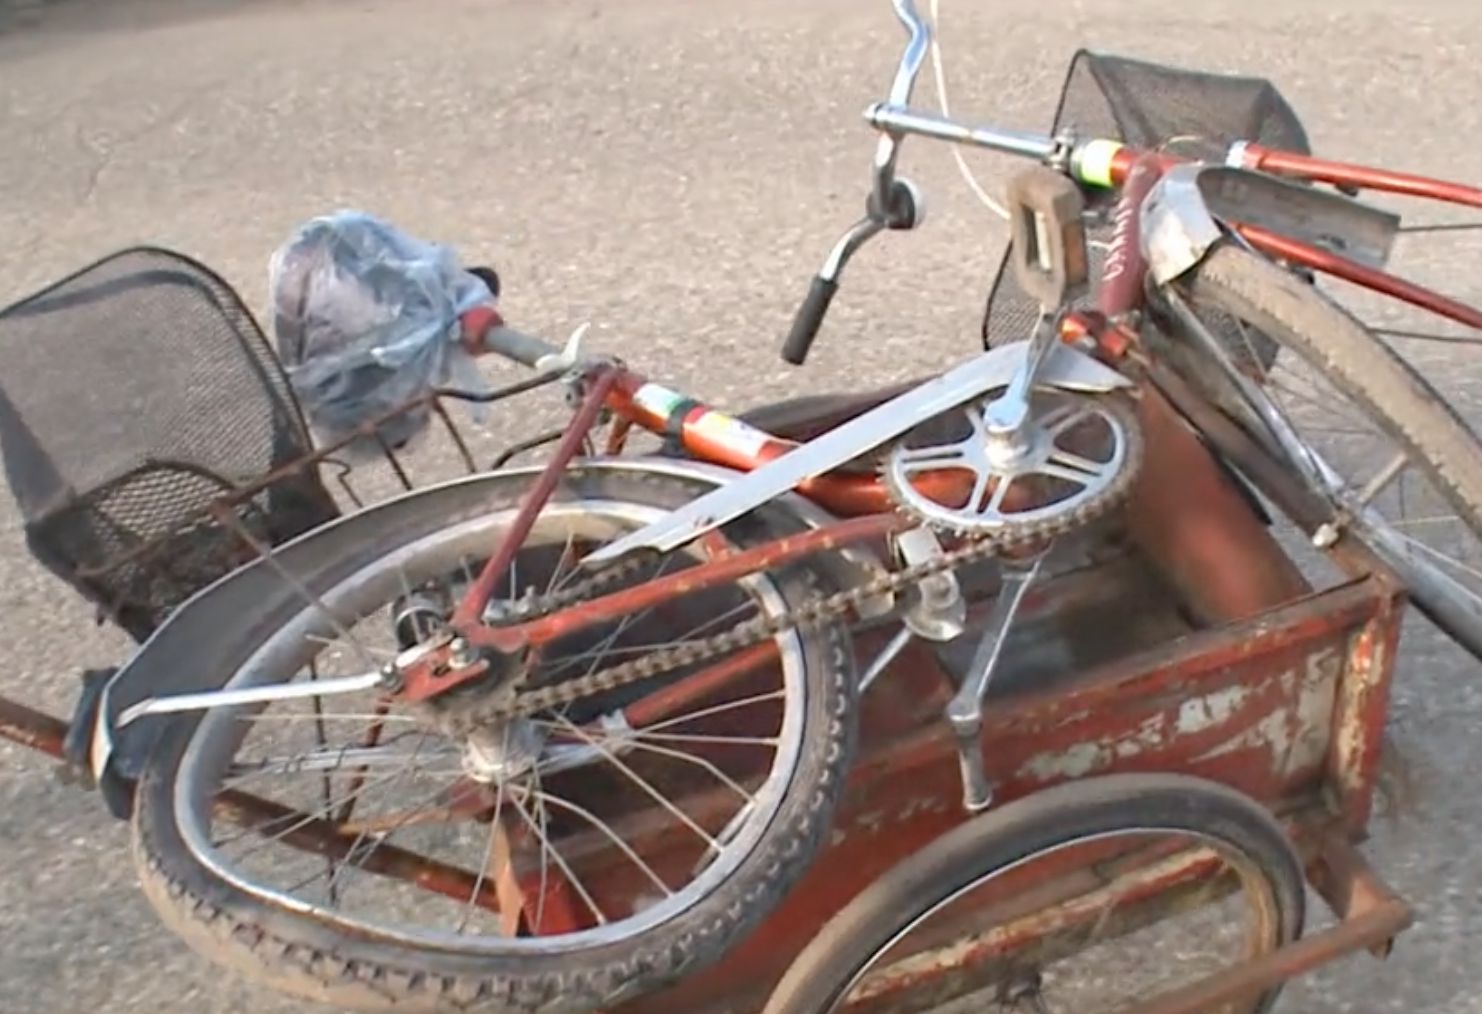 Salakos utcai tragédia: barátnőjéhez biciklizett az áldozat